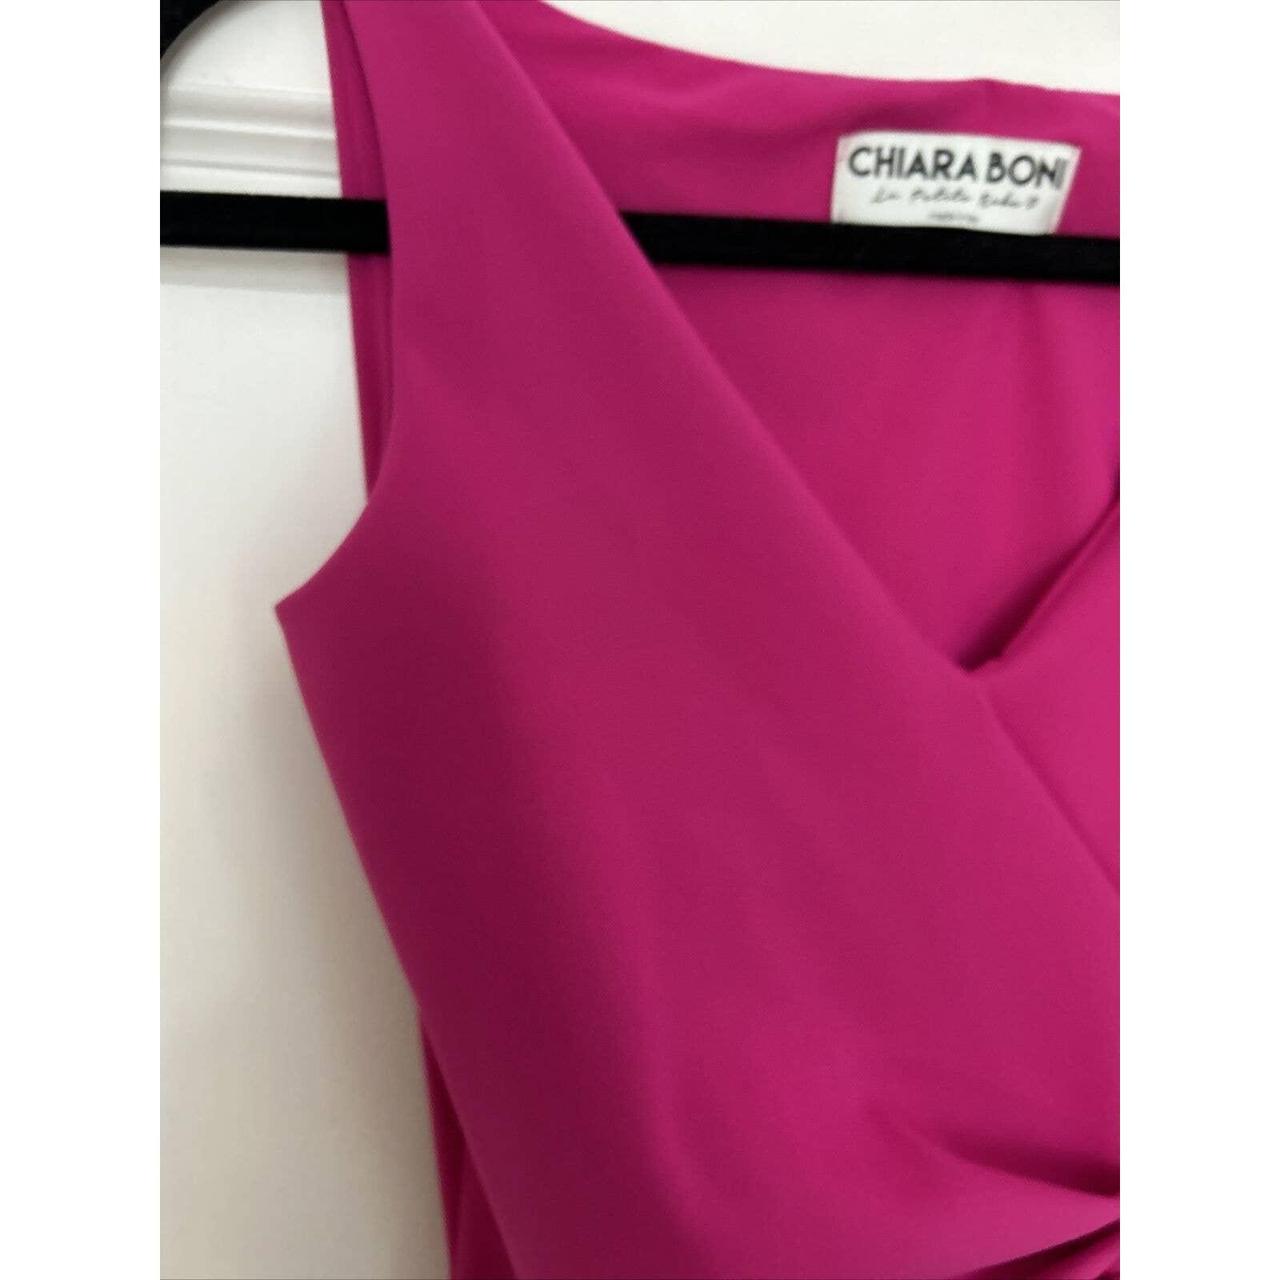 Chiara Boni La Petite Robe Women's Pink Dress (8)